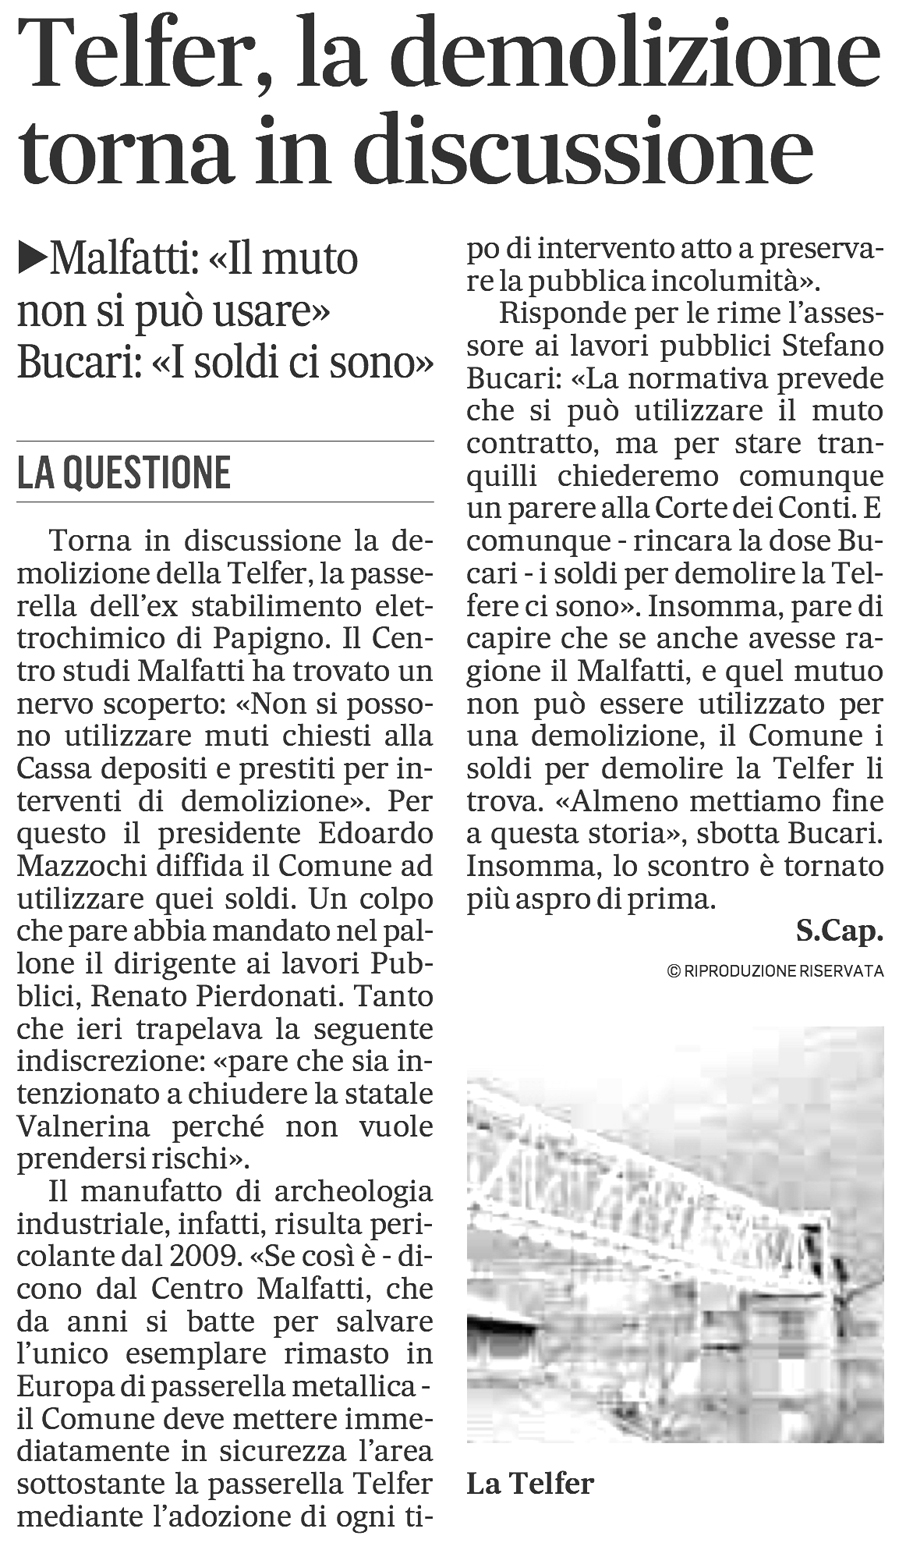 Il Messaggero 28-11-2014 p. 47